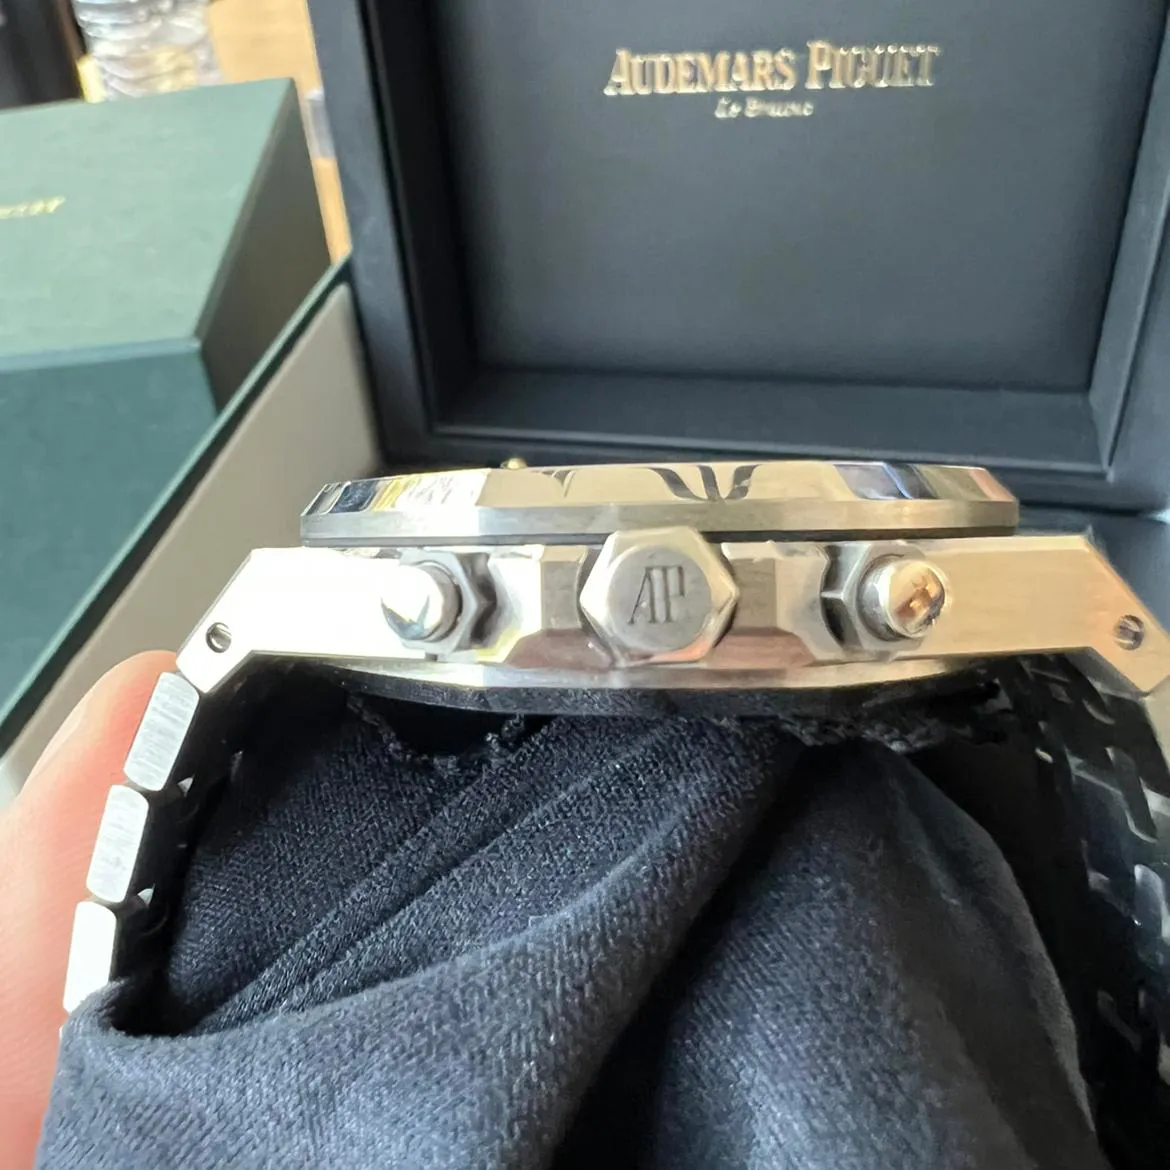 Audemars Piguet Royal Oak Chronograph 26315ST.OO.1256ST.02 38mm Steel Gray 3